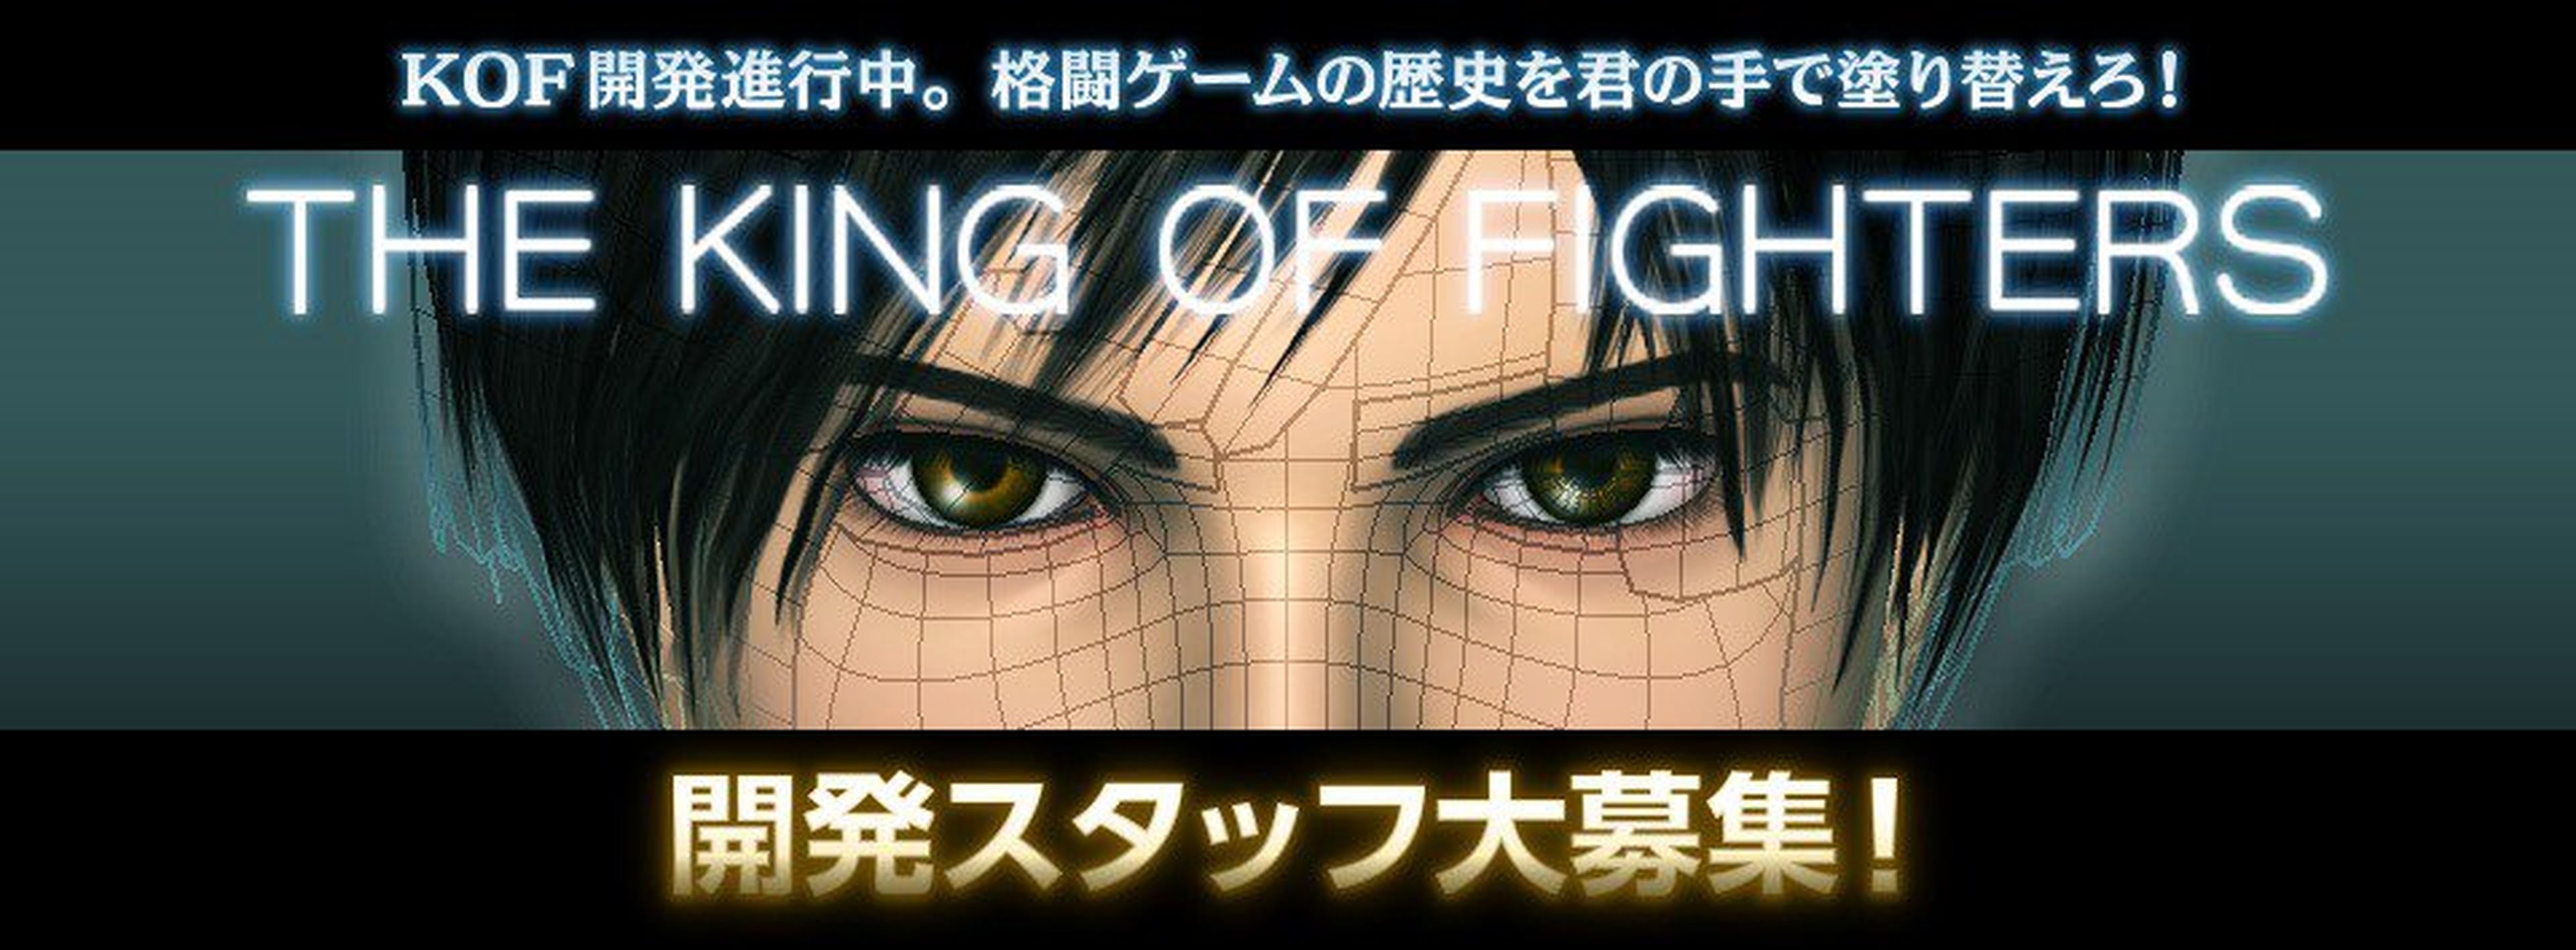 Un nuevo King of Fighters en desarrollo